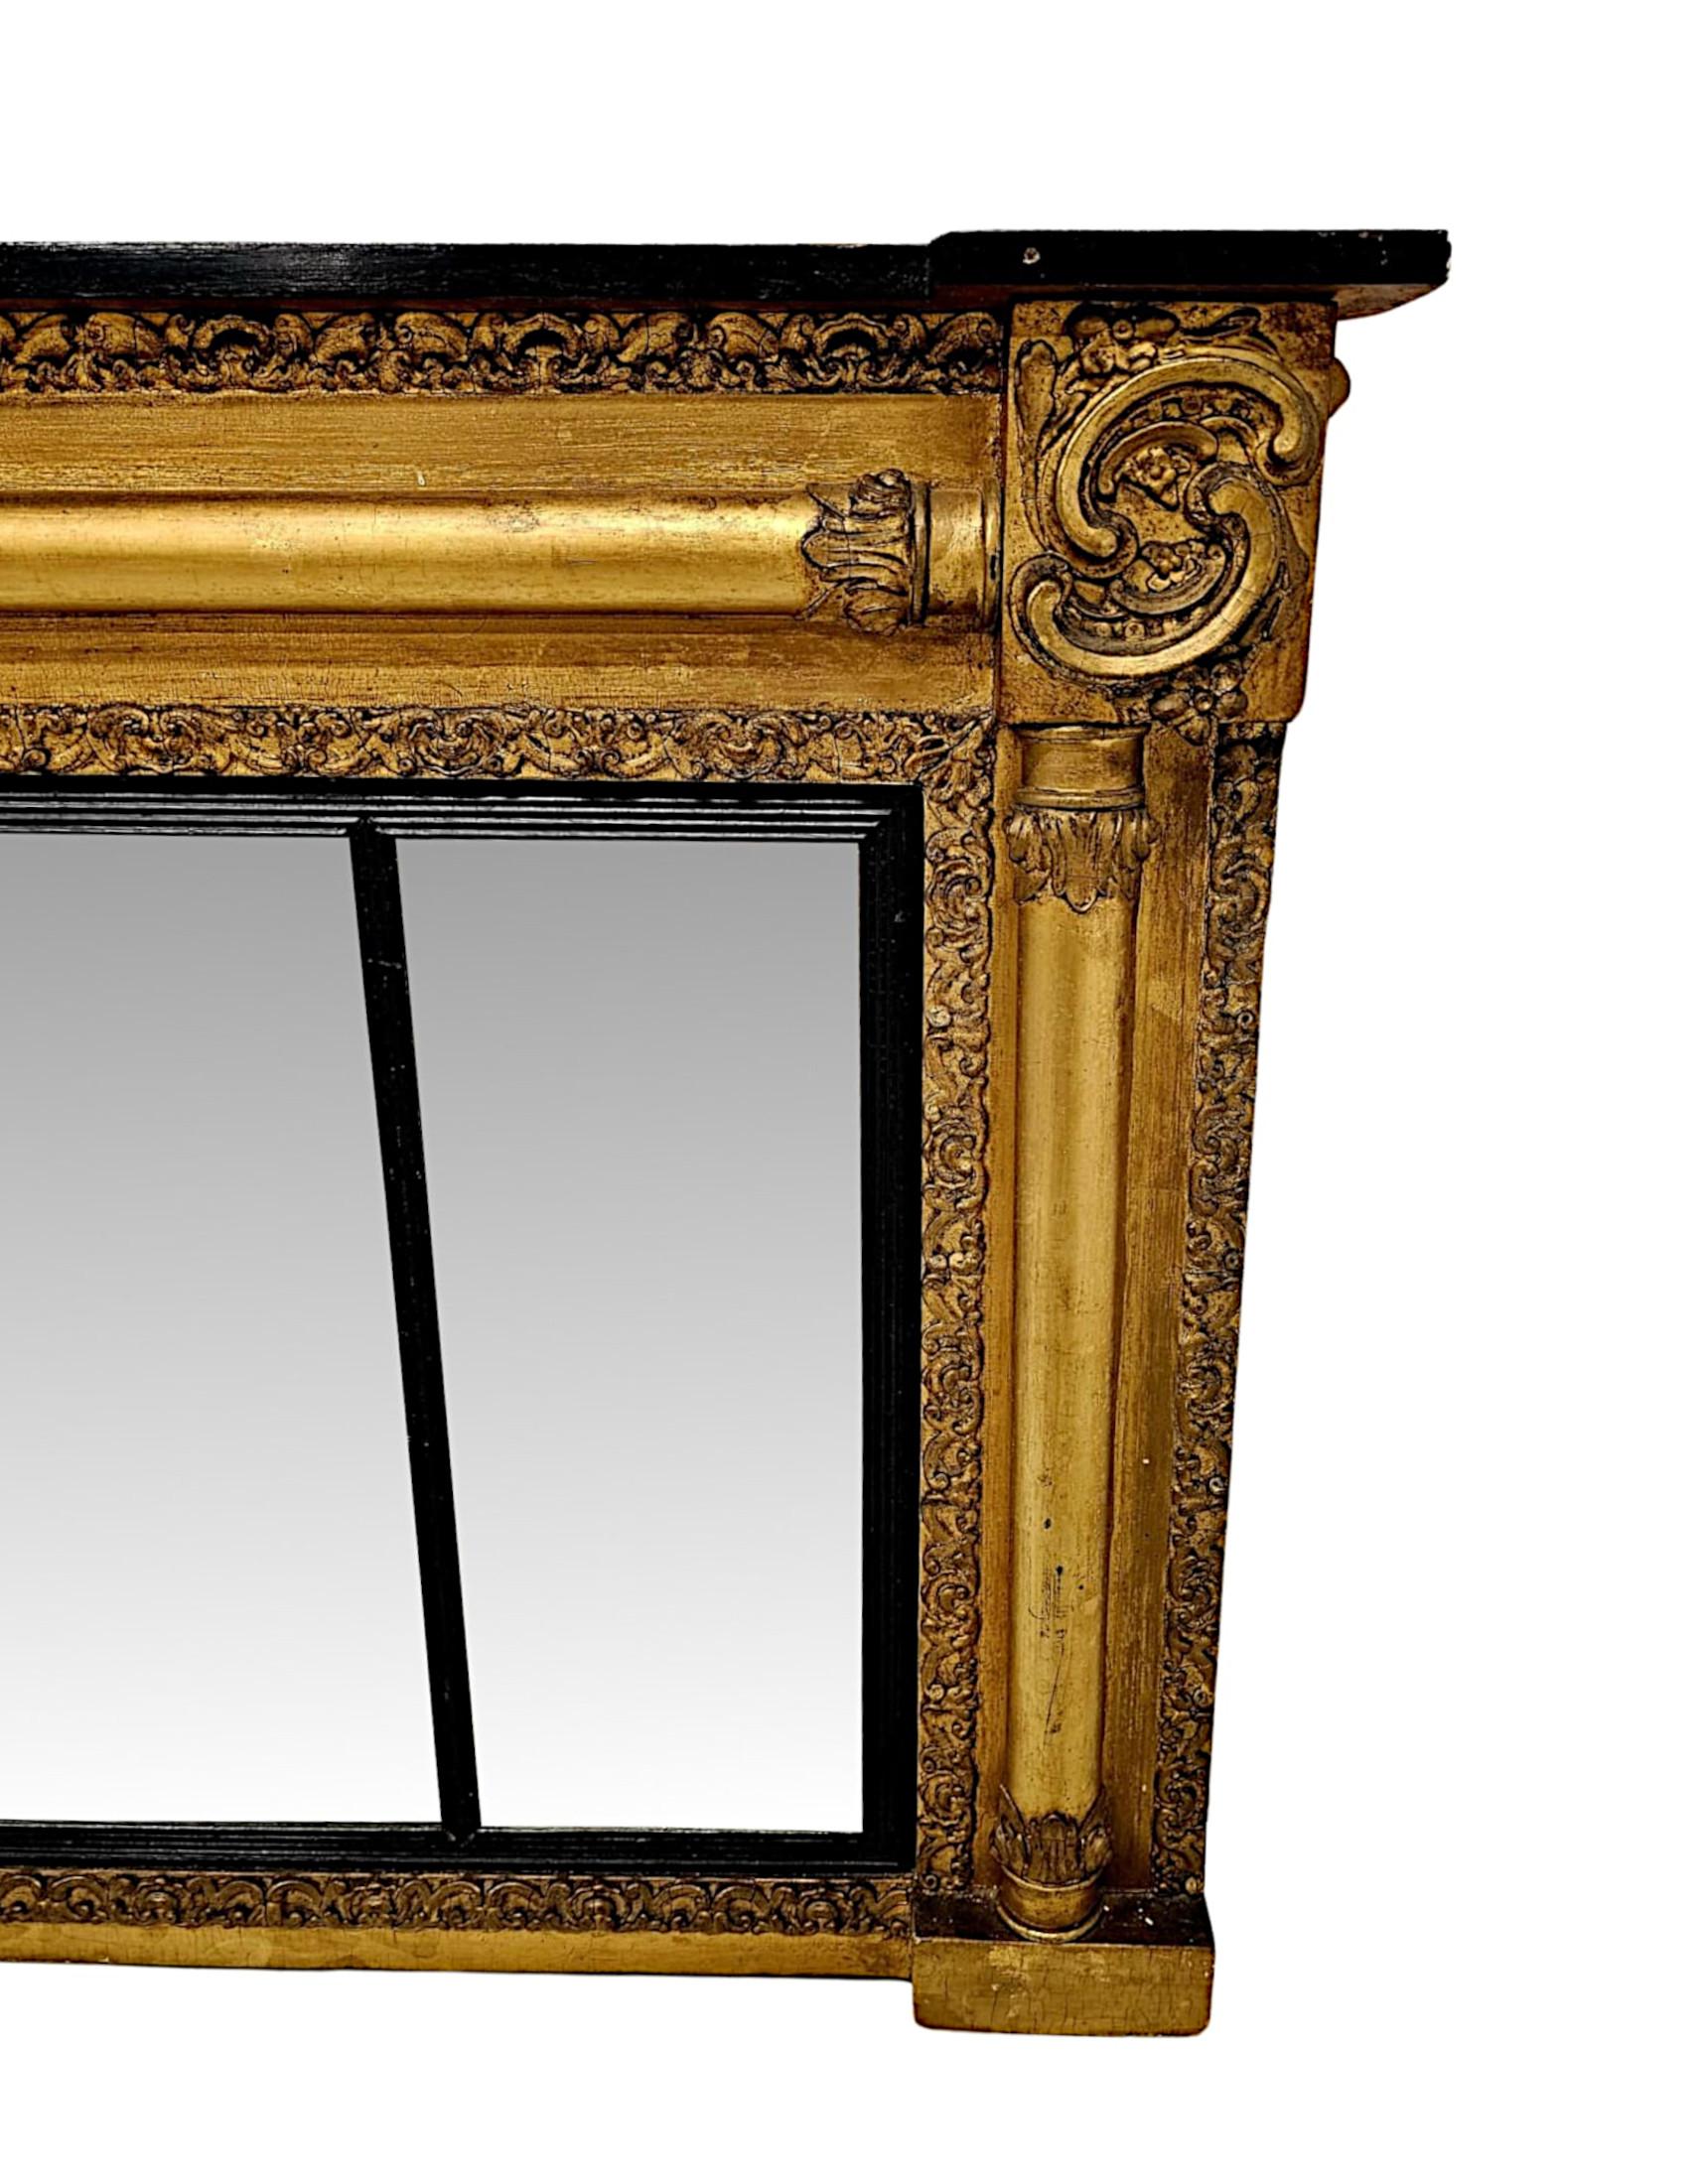 Une image étonnante et inhabituelle  Miroir à trumeau en bois doré du XIXe siècle, finement sculpté à la main, d'une qualité exceptionnelle et de proportions basses et larges.  Le cadre en bois doré mouluré et cannelé, orné de motifs feuillagés très